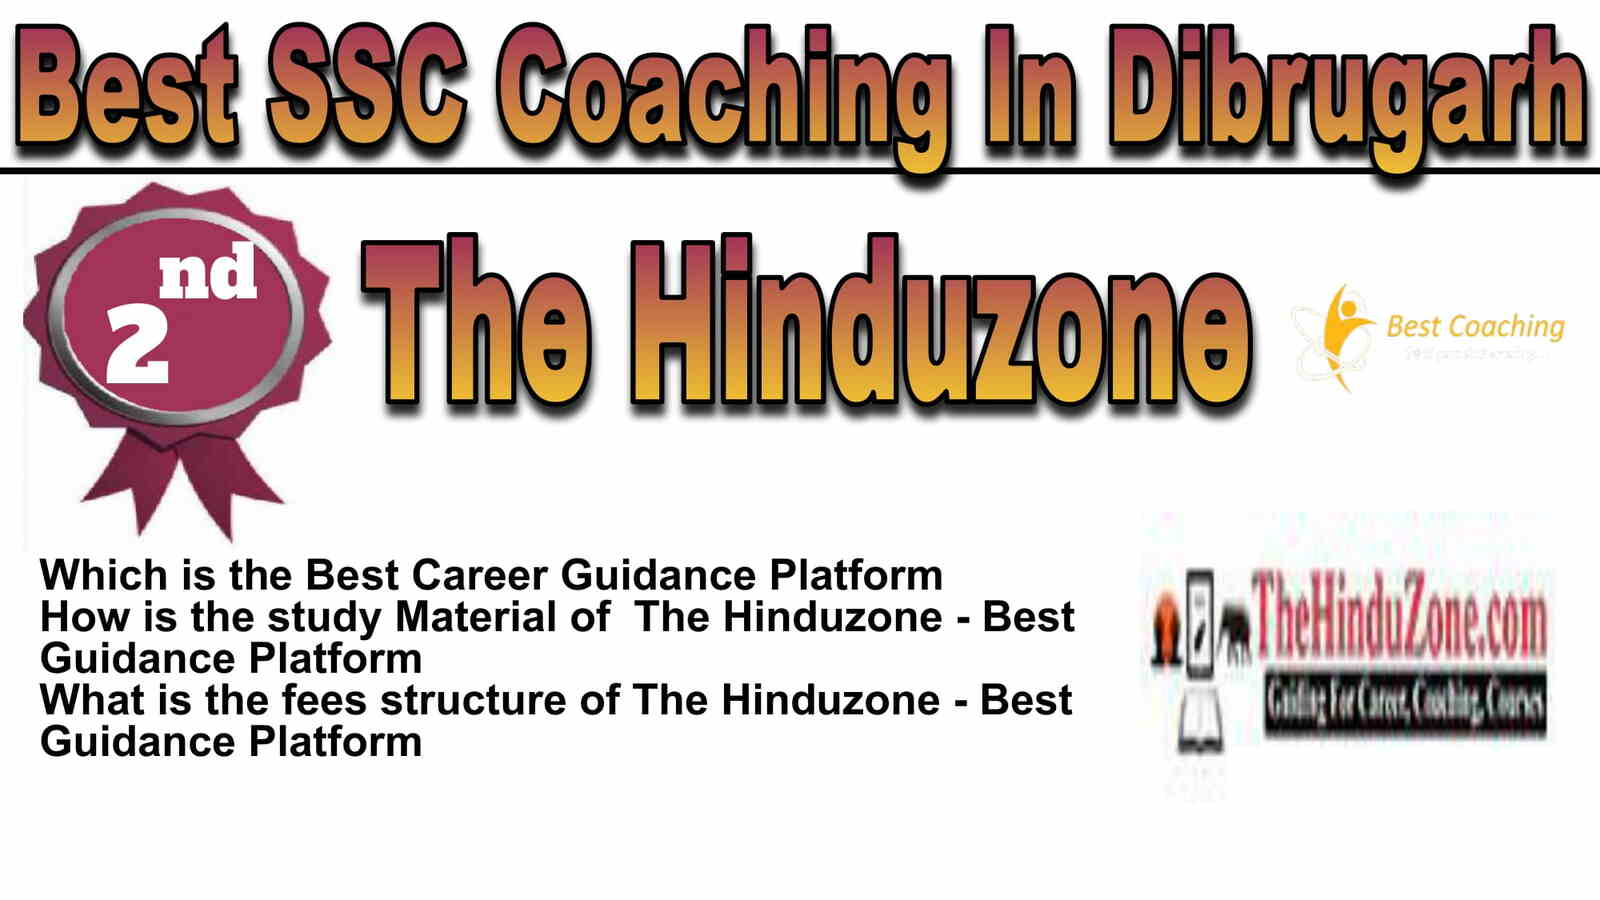 Rank 2 Best SSC Coaching in Dibrugarh